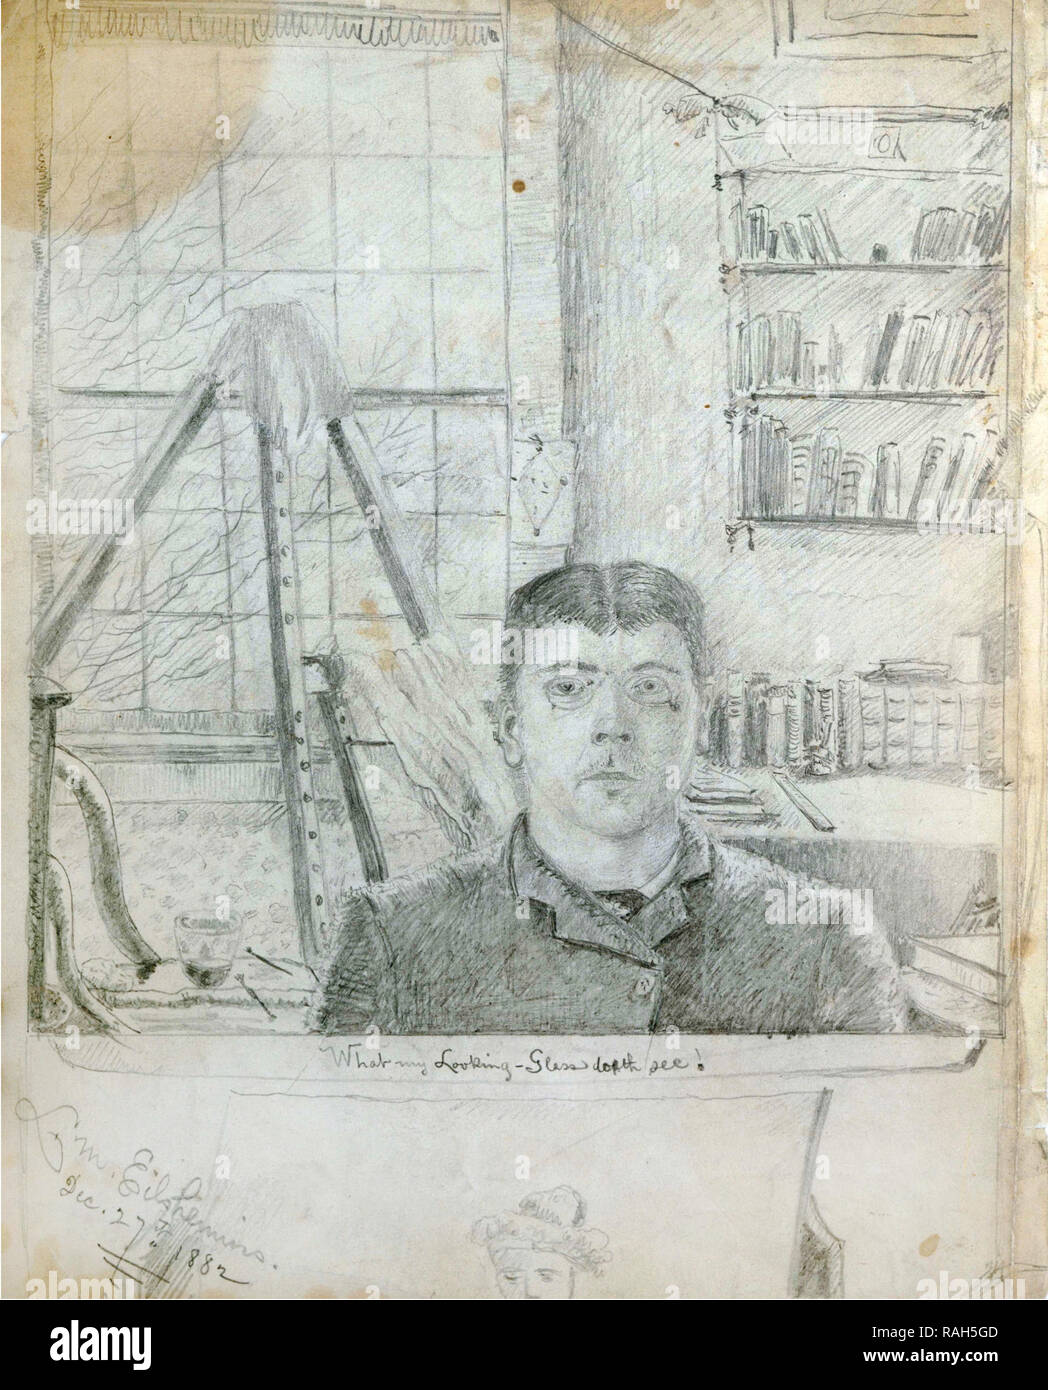 Louis Eilshemius, Self-Portrait 1882 Graphite pencil on wove paper, The Phillips Collection, Washington, D.C., USA. Stock Photo